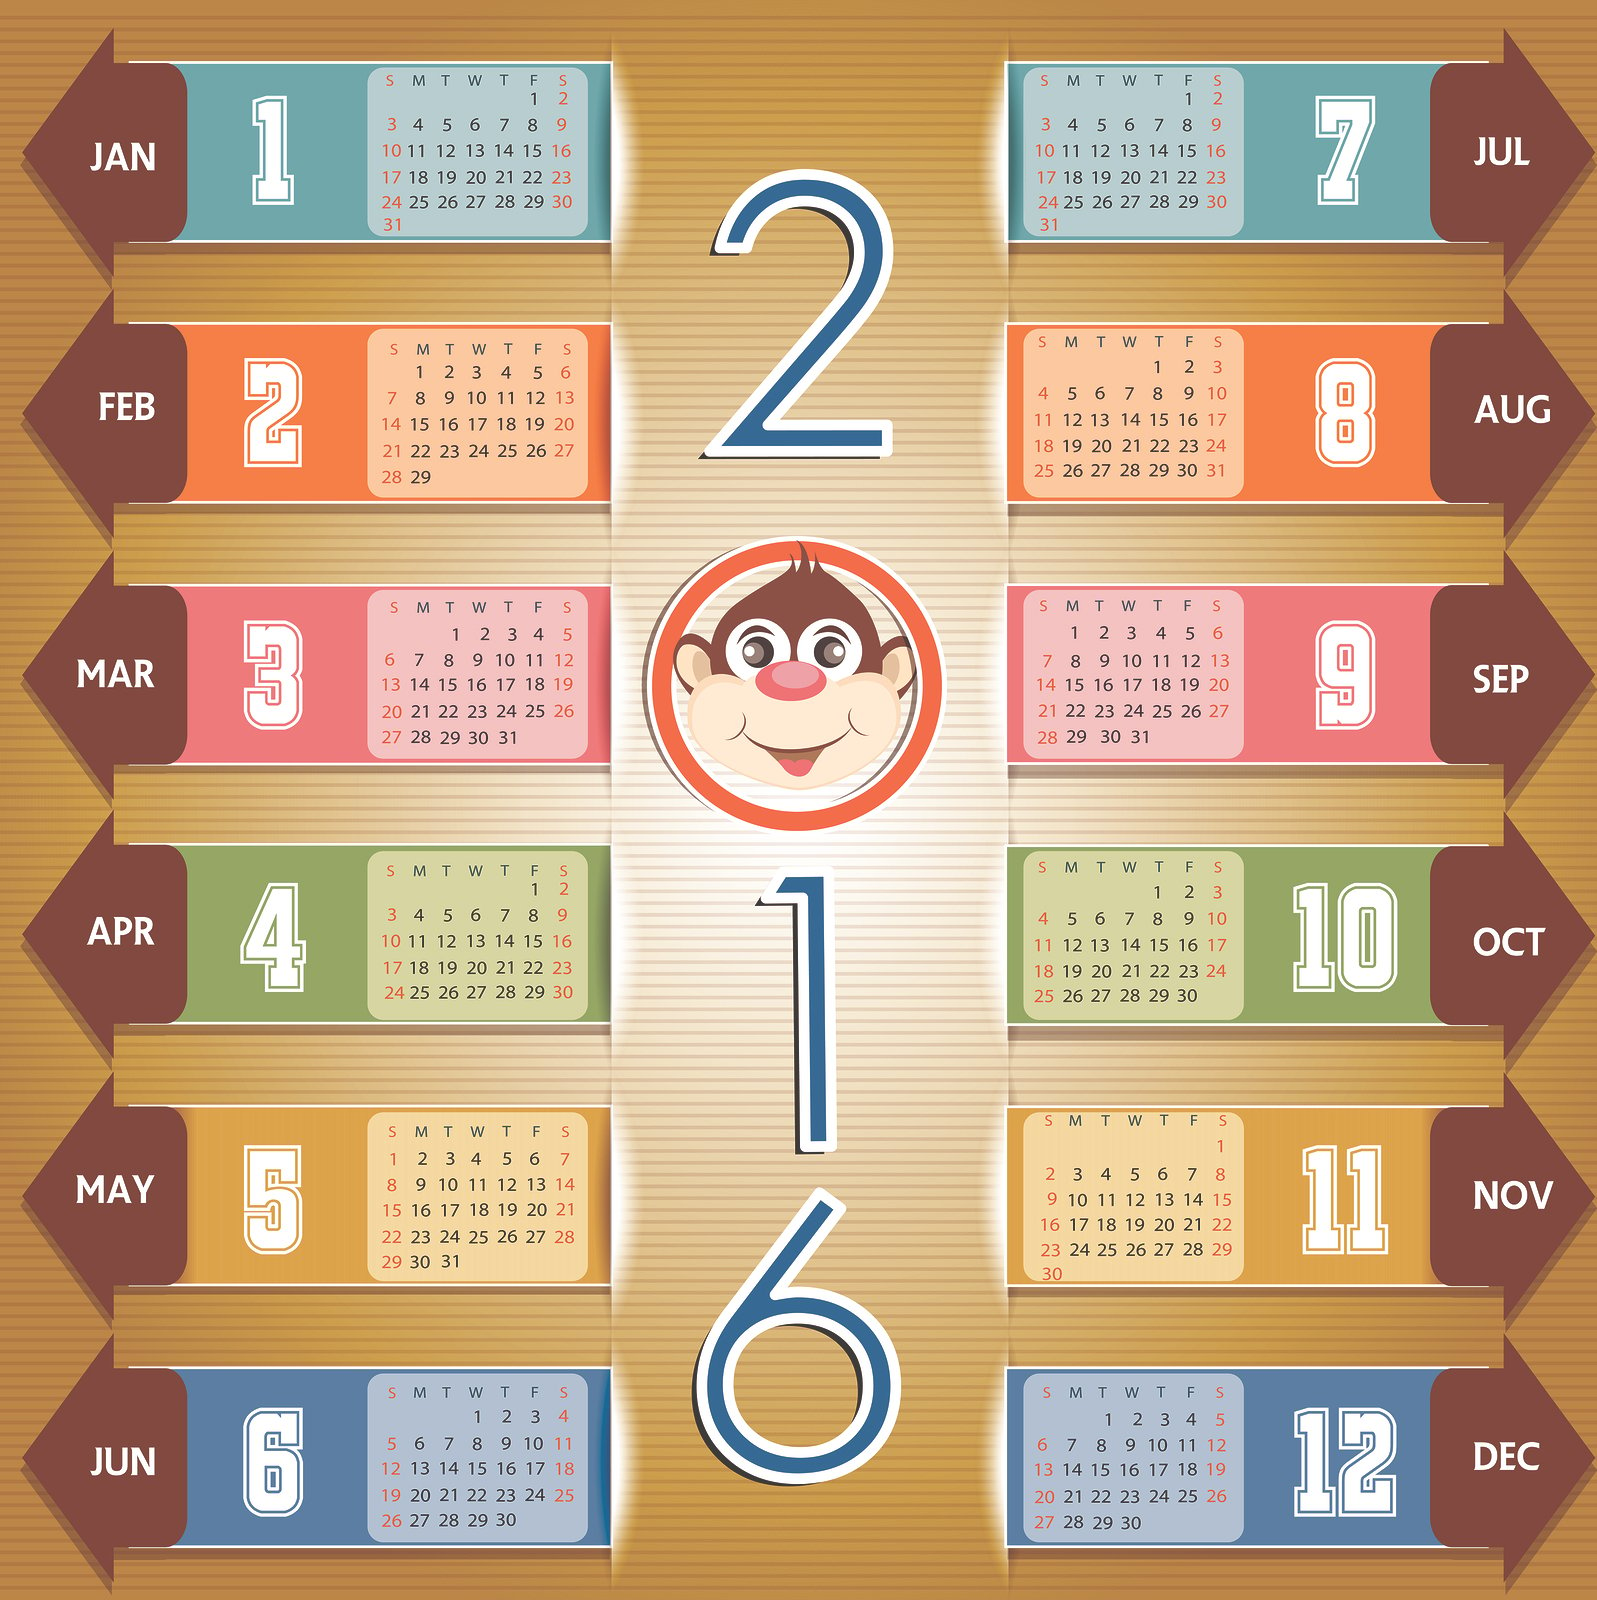 2016 Year Calendar Wallpaper Download 2016 Calendar by Month 1597x1600